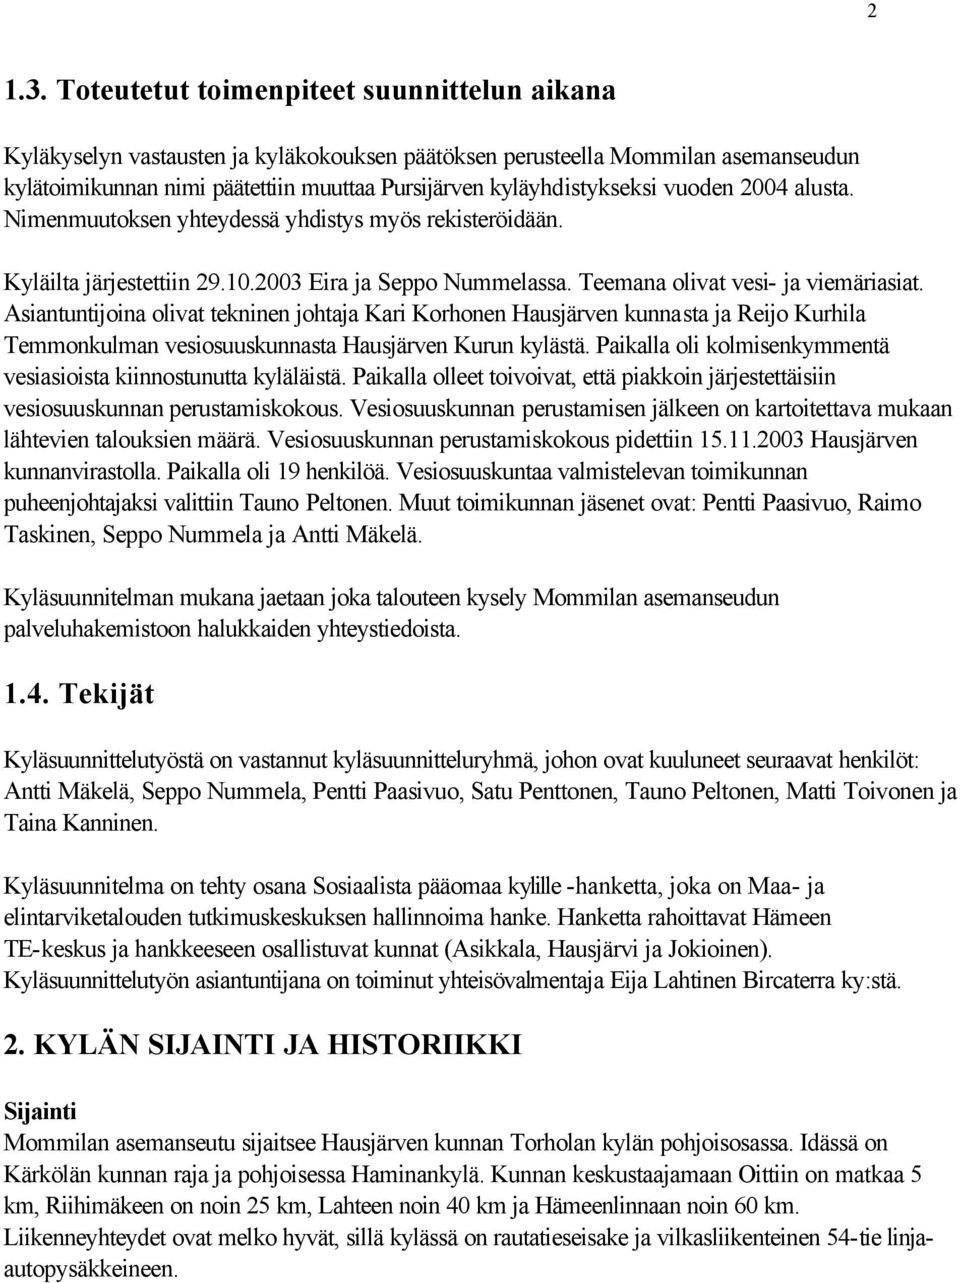 vuoden 2004 alusta. Nimenmuutoksen yhteydessä yhdistys myös rekisteröidään. Kyläilta järjestettiin 29.10.2003 Eira ja Seppo Nummelassa. Teemana olivat vesi- ja viemäriasiat.